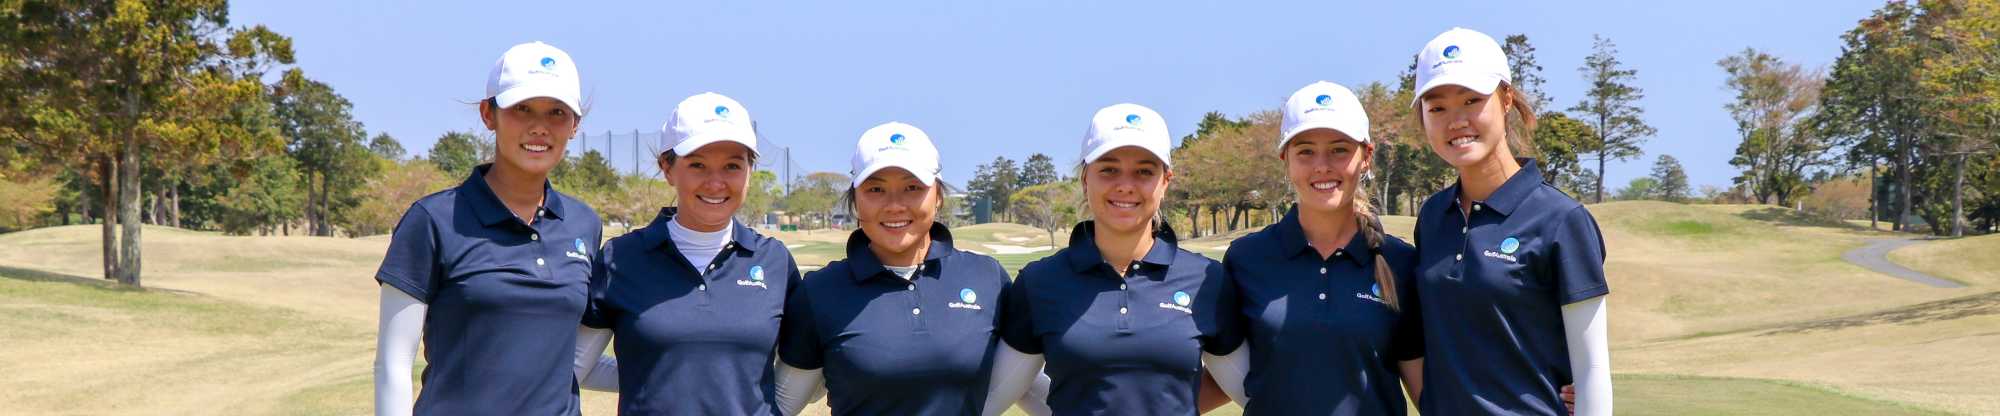 Team Australia_2019 Women's Amateur Asia-Pacific